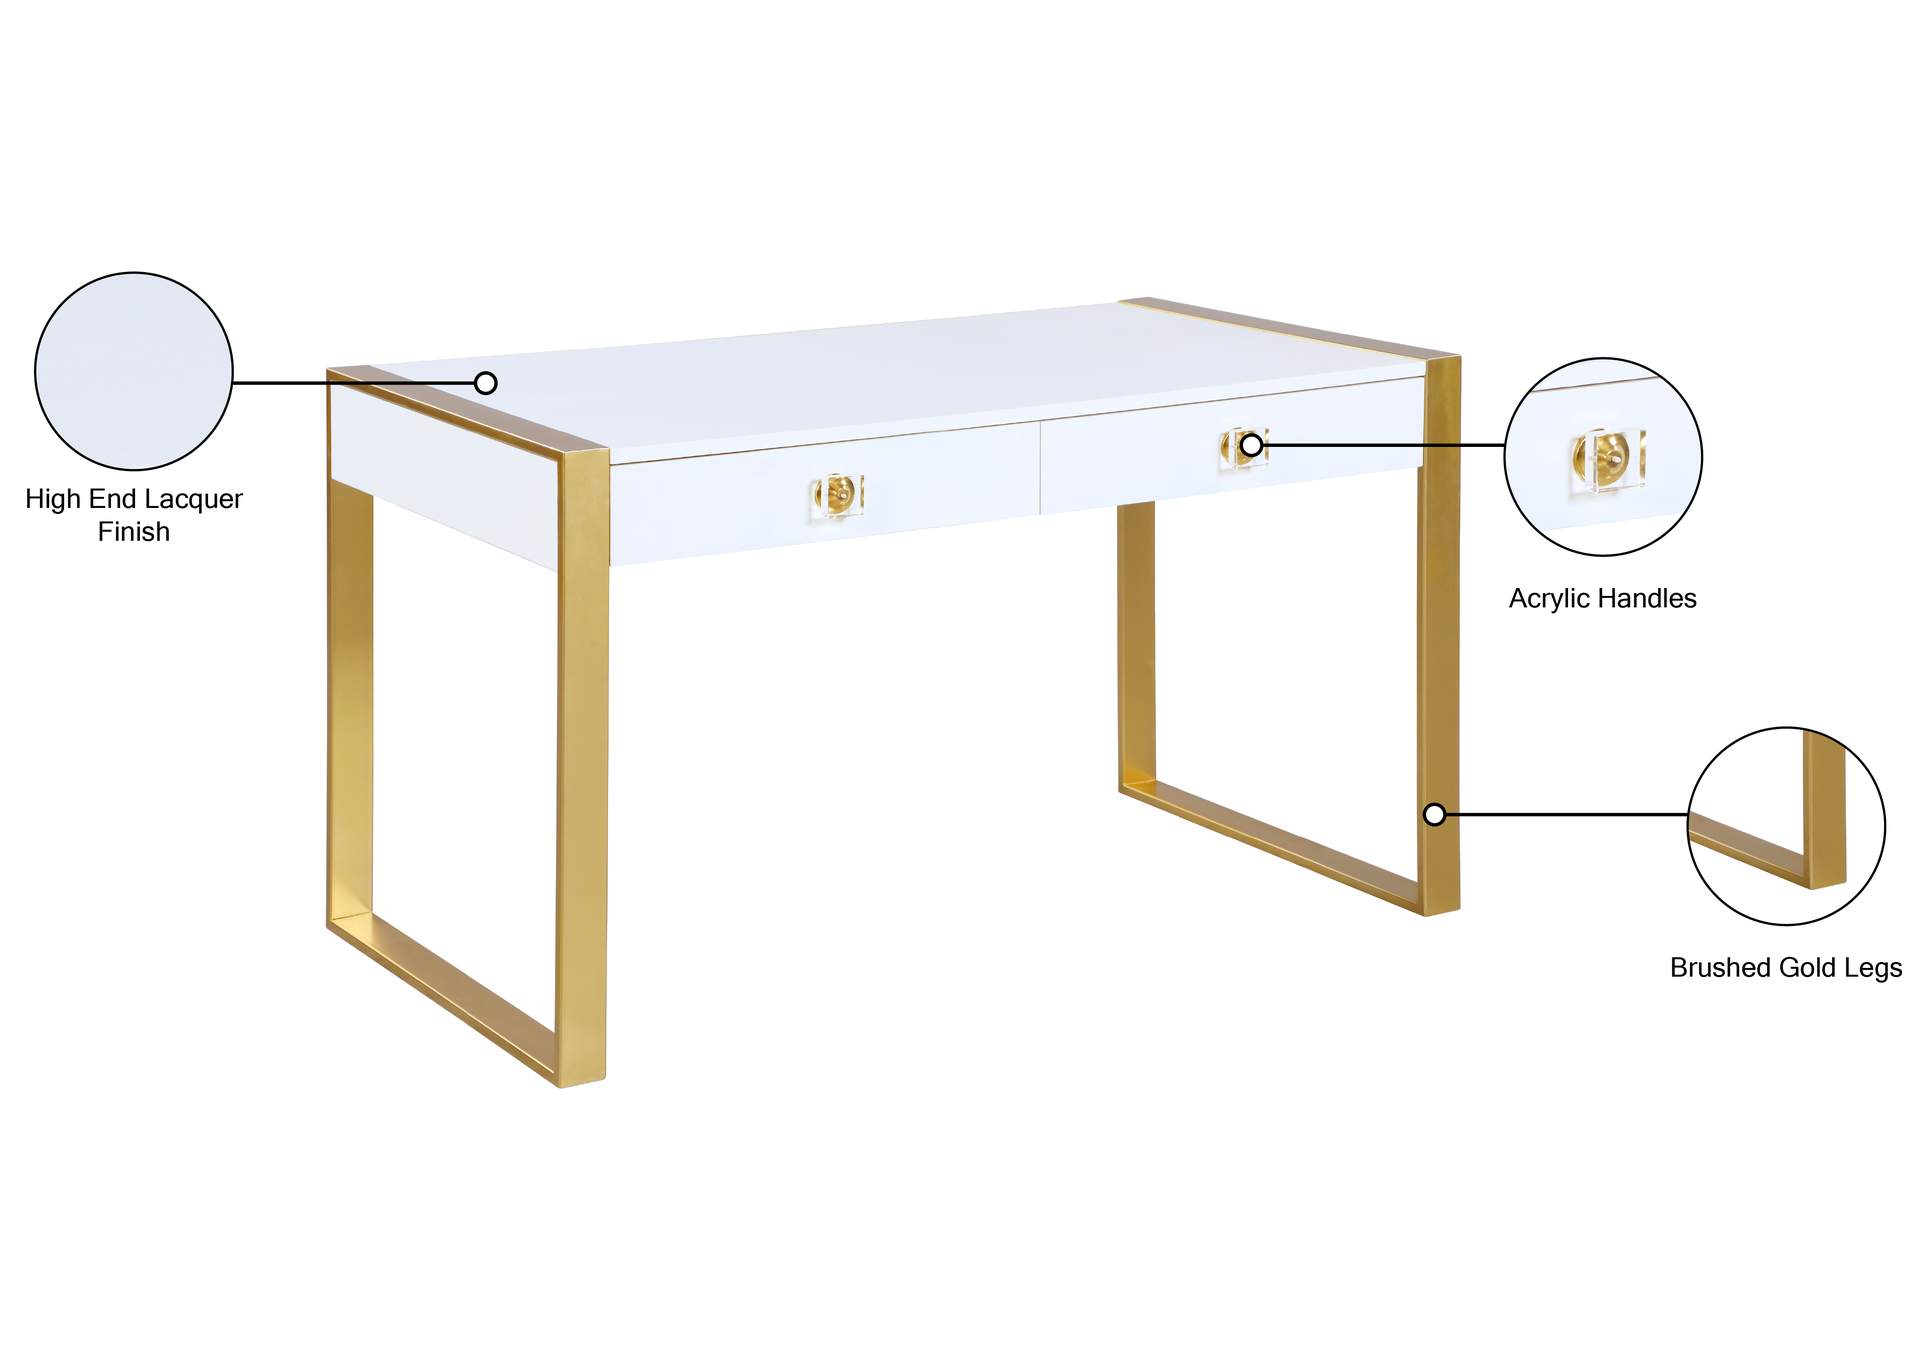 Victoria White / Gold Desk/Console,Meridian Furniture